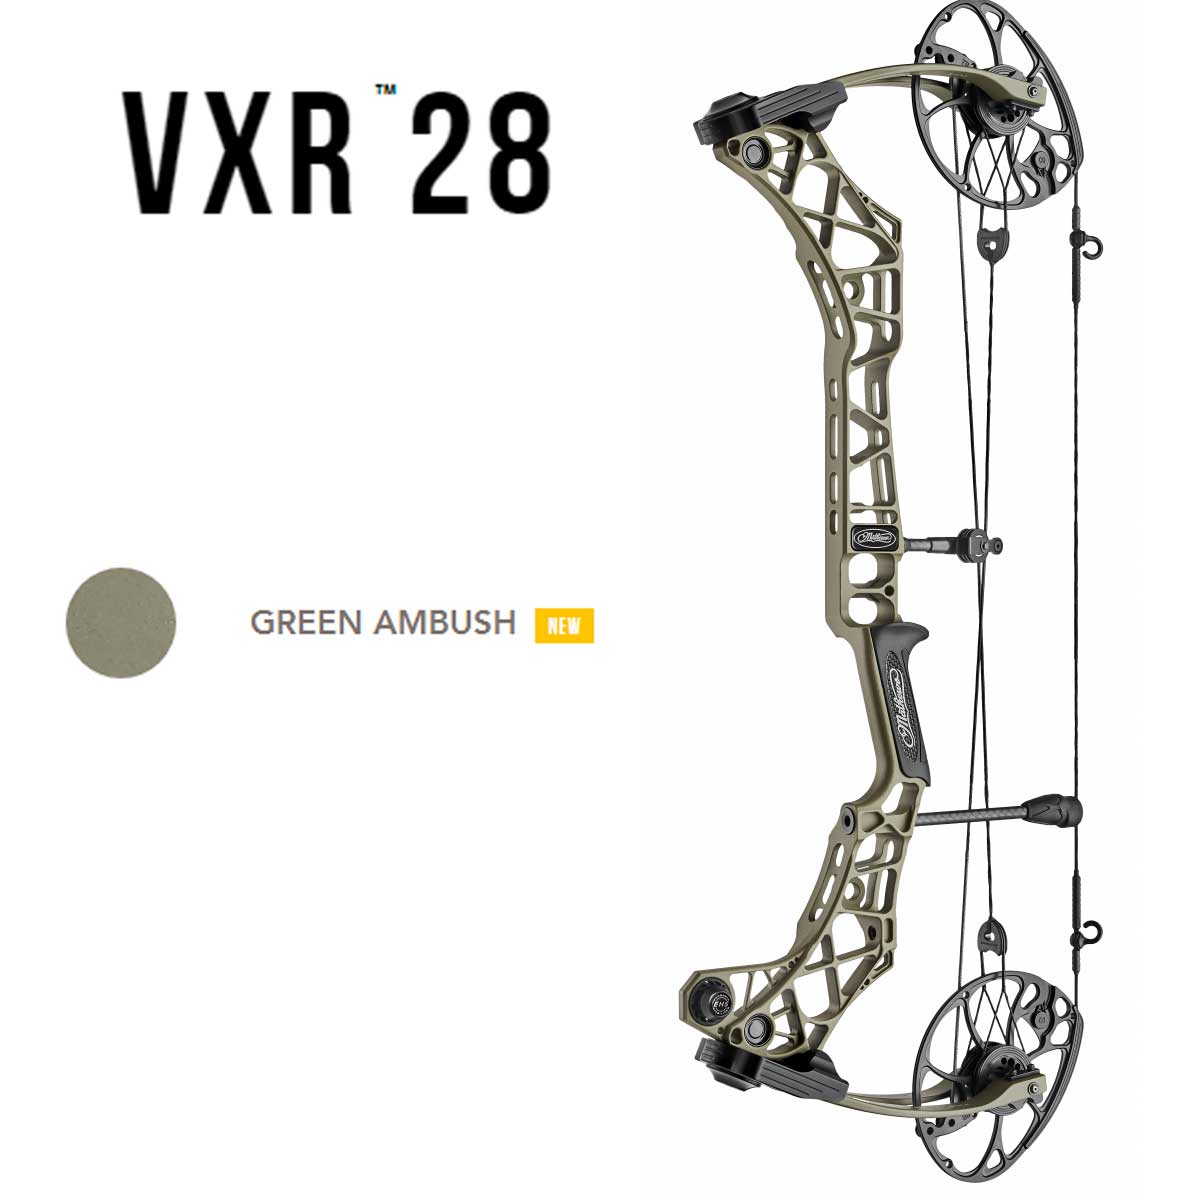 Лук блочный VXR28, начальная скорость 344 фут в сек, расстояние между осями 30", база 6", сила 60 lb